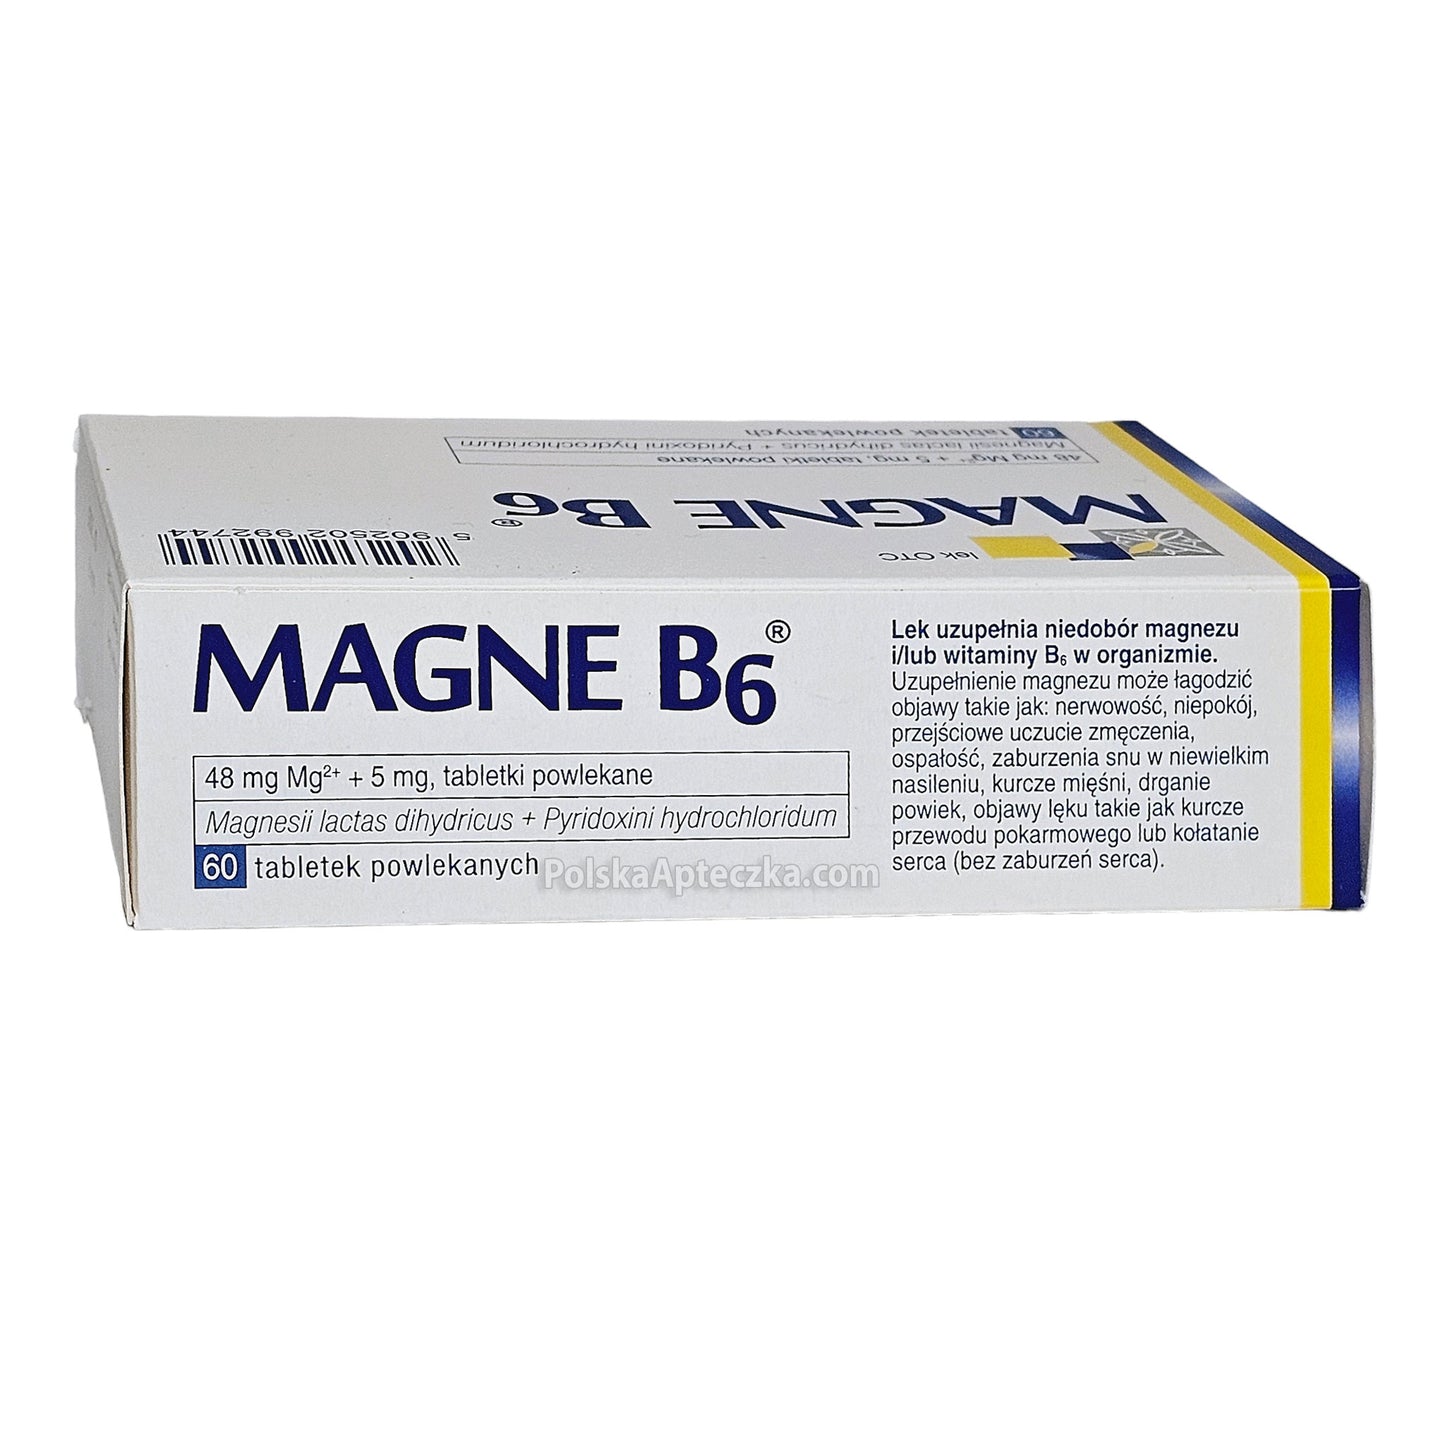 Magne B6 tablets